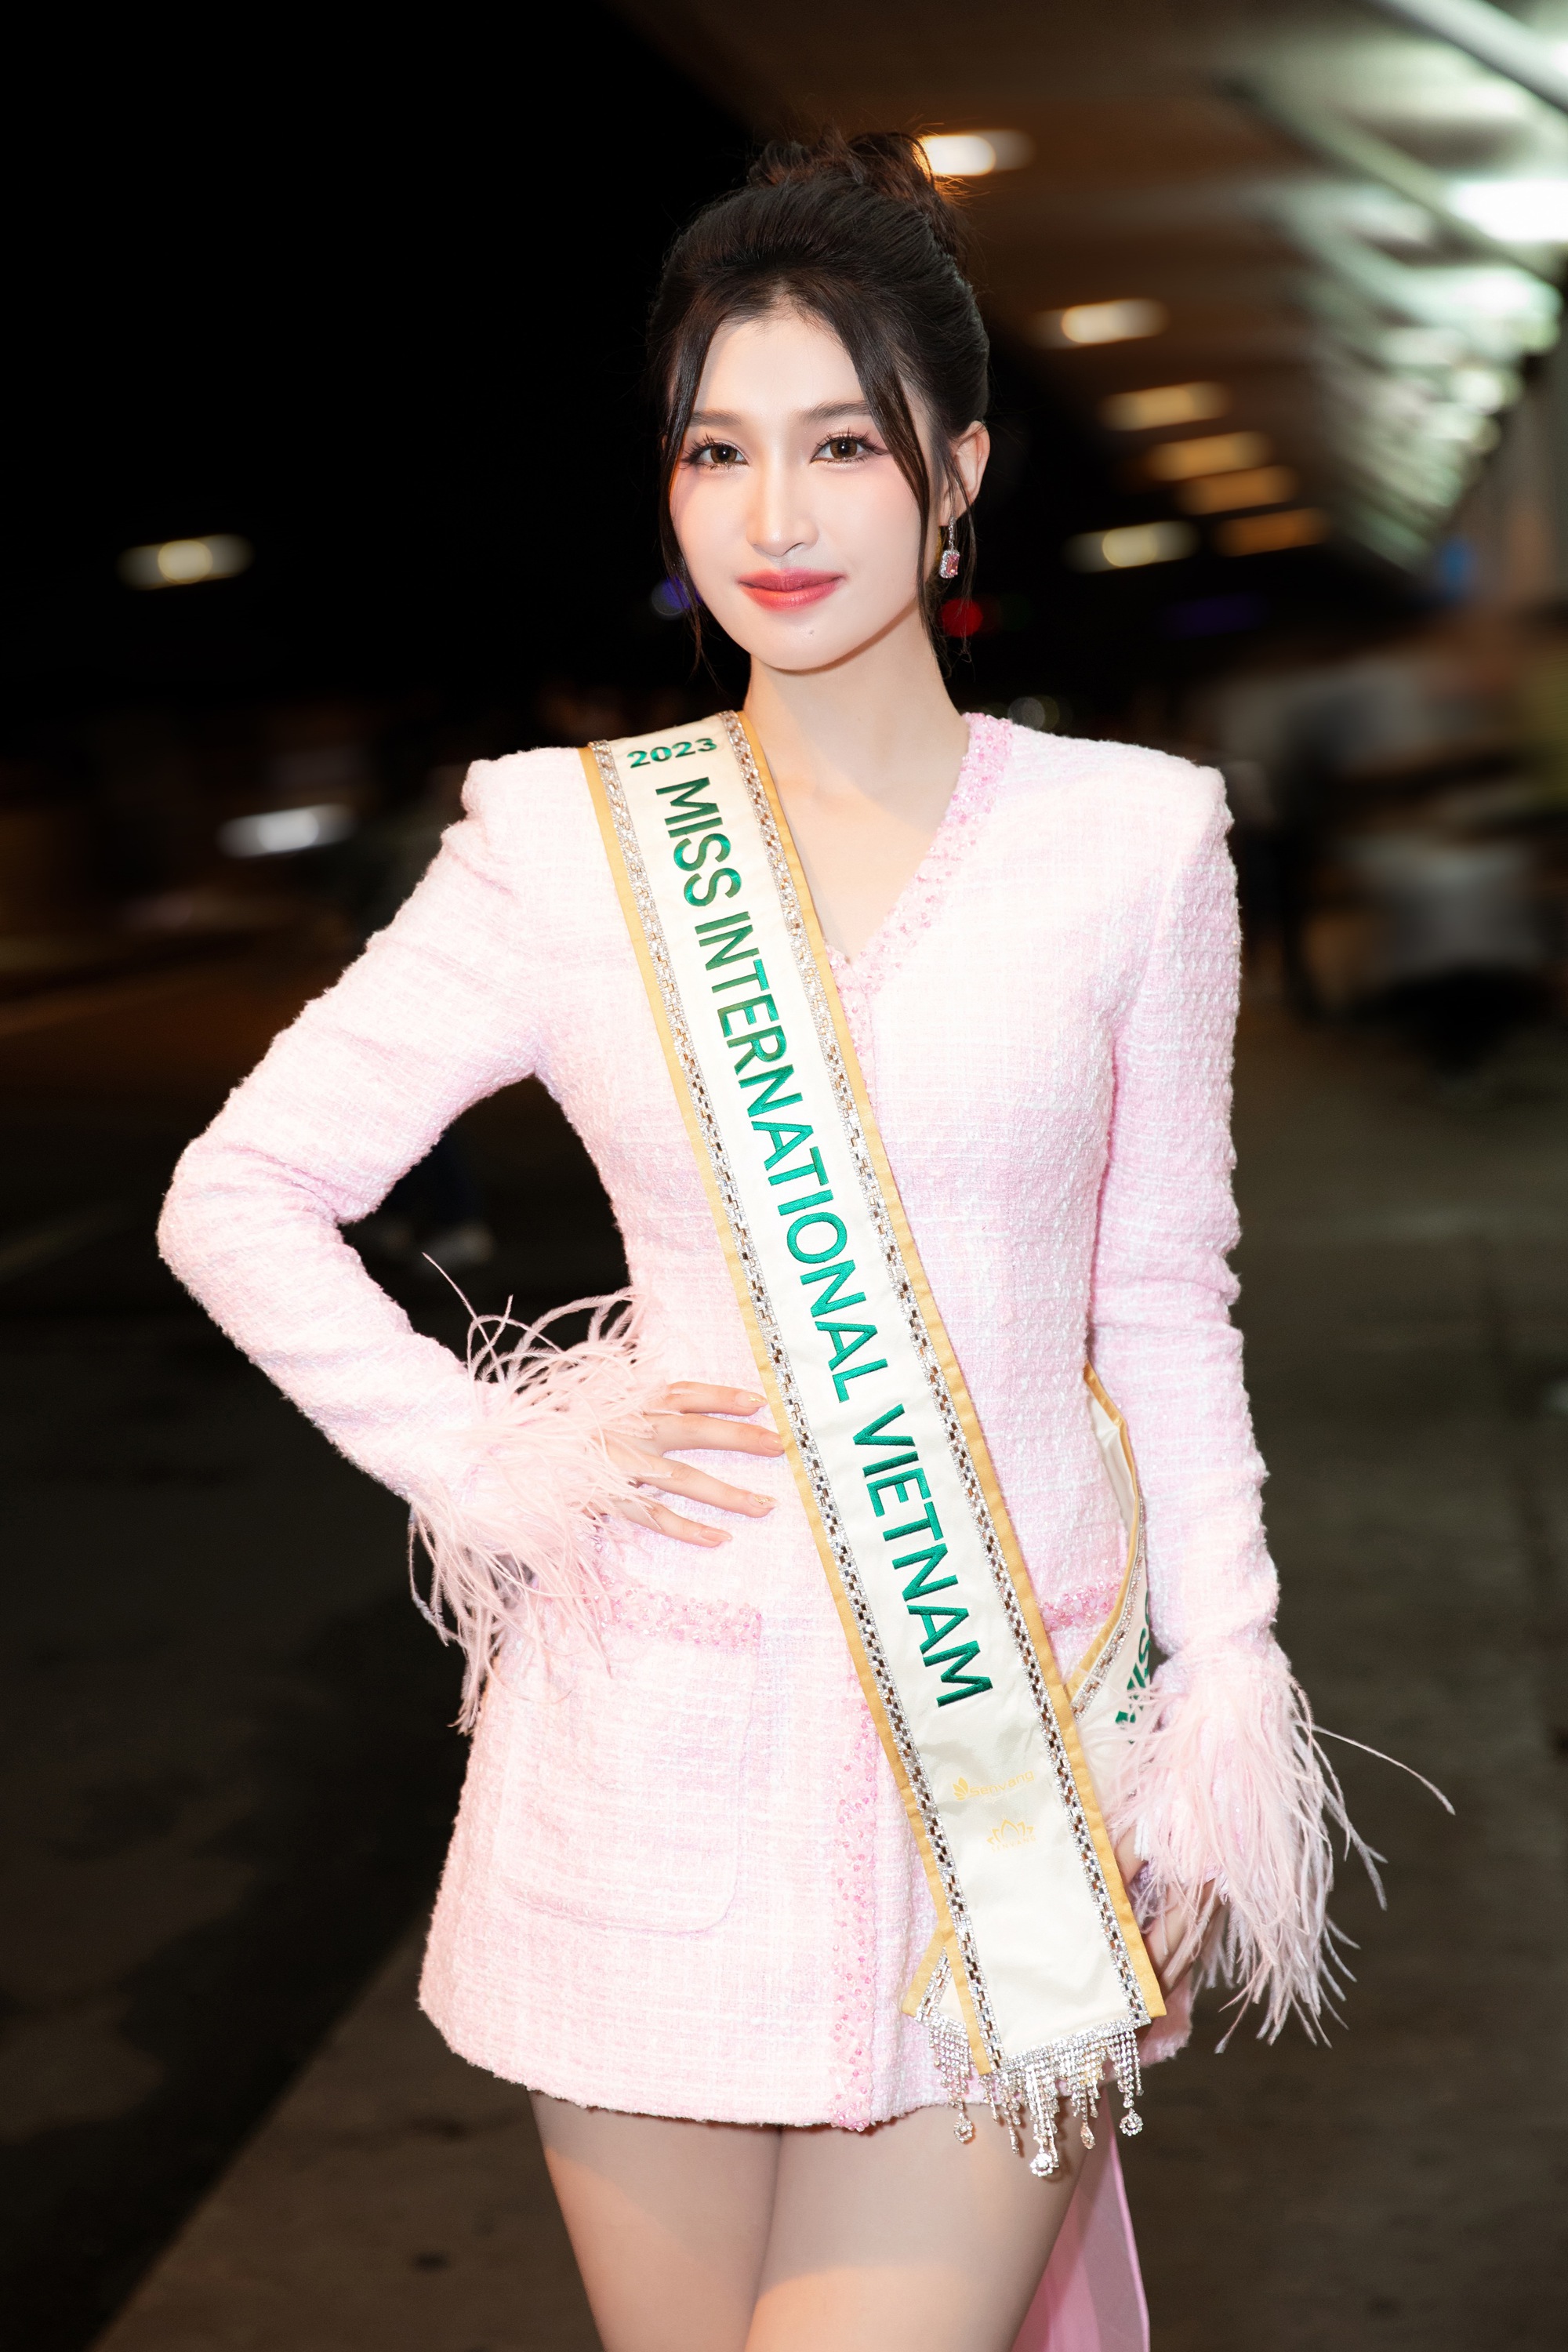 Á hậu Phương Nhi lên đường thi Miss International 2023 gây chú ý khi mang kiện hành lý đặc biệt dài 2m - Ảnh 1.